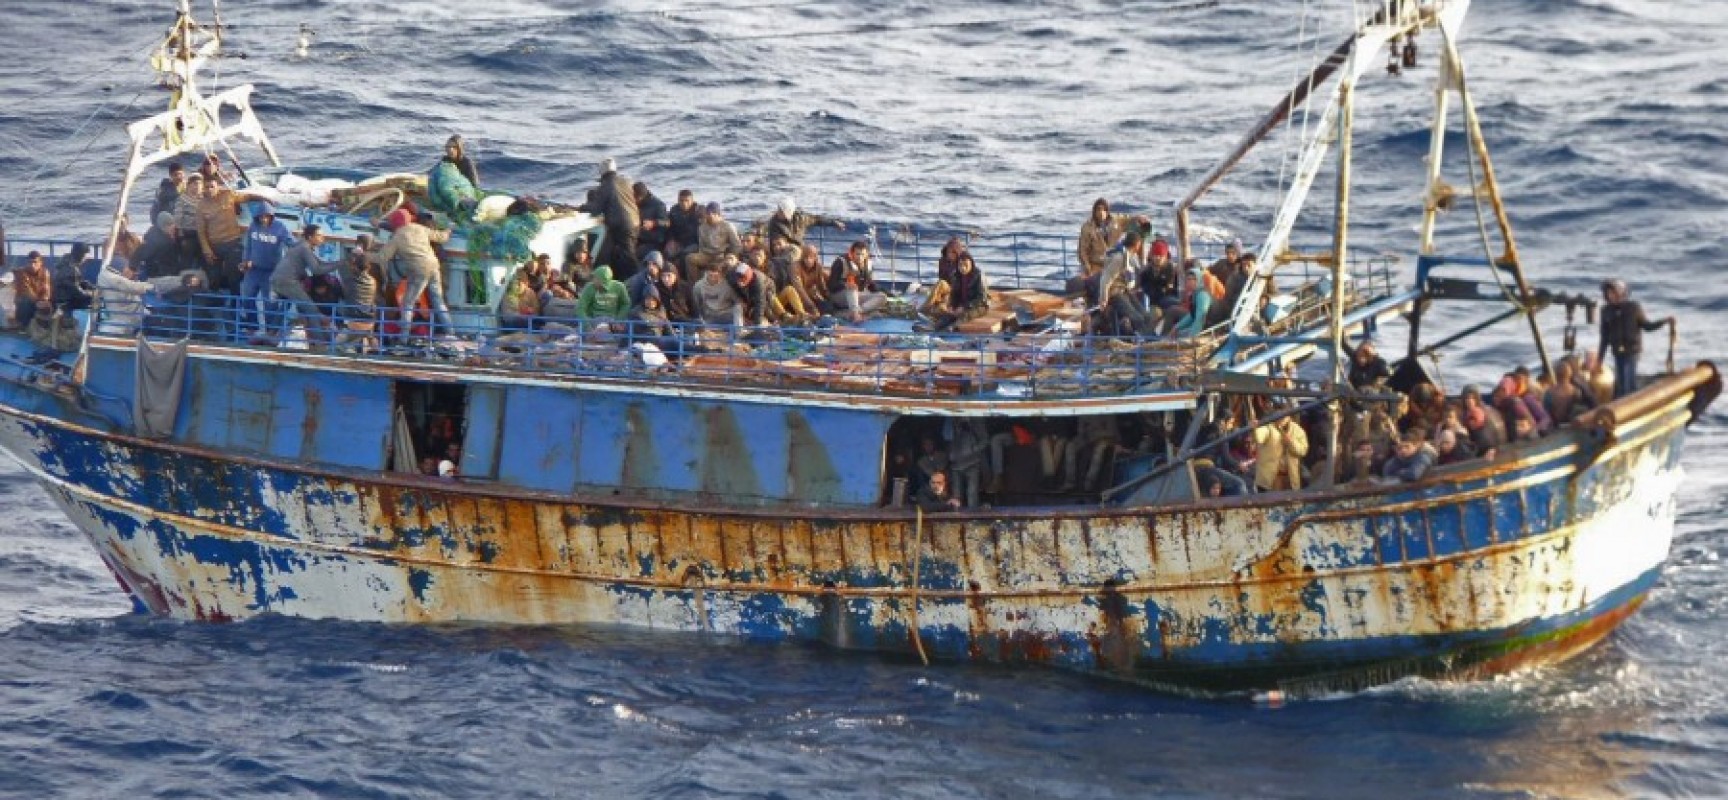 Τουλάχιστον 1.000 άτομα διασώθηκαν την Παρασκευή στη Μεσόγειο